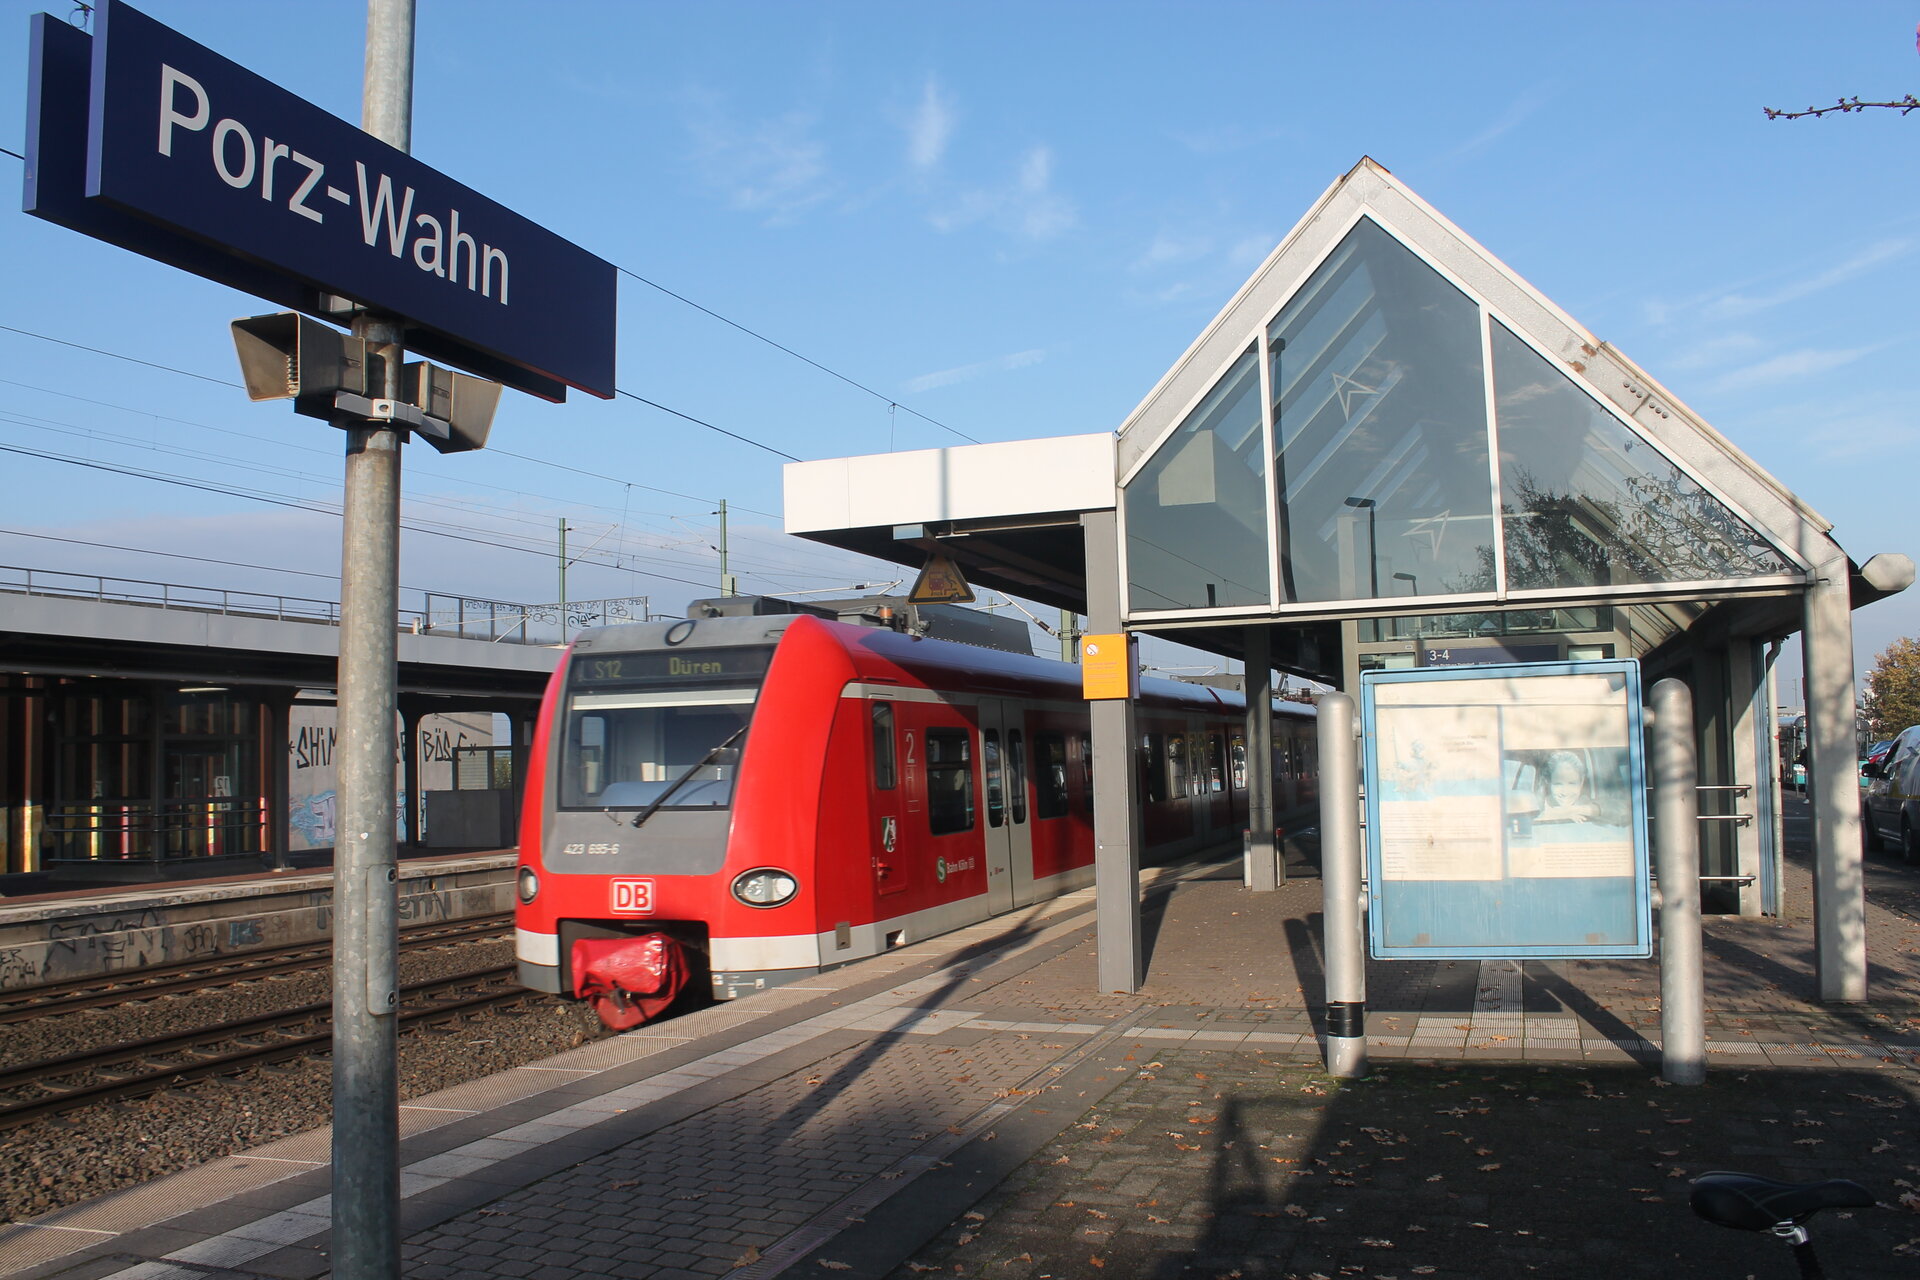 Porz-Wahn train